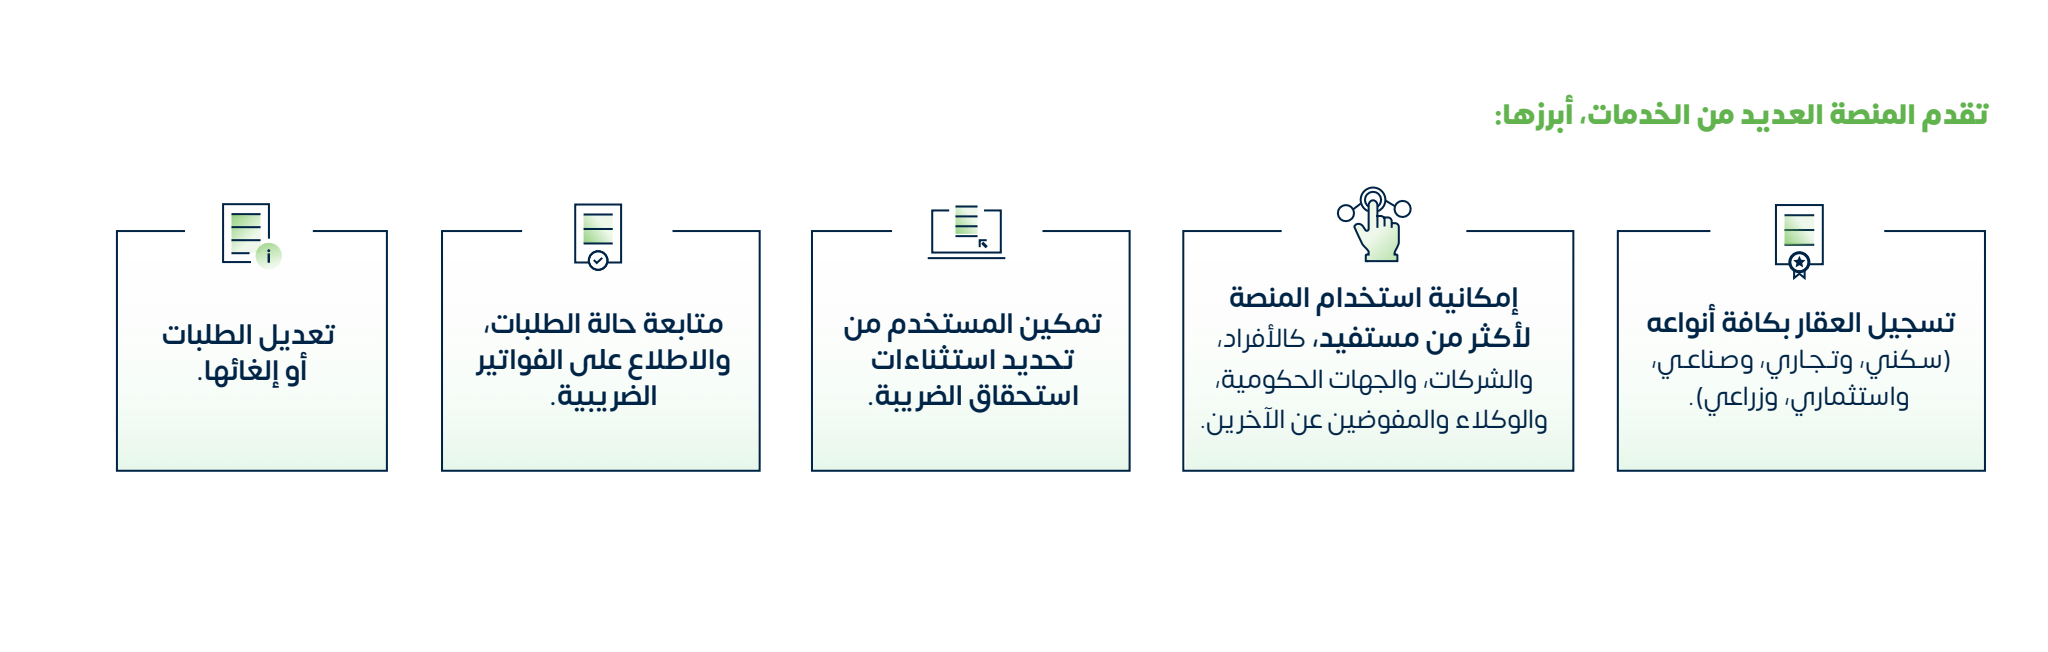 رابط وخطوات الاستعلام عن الرقم الضريبي zatca.gov.sa